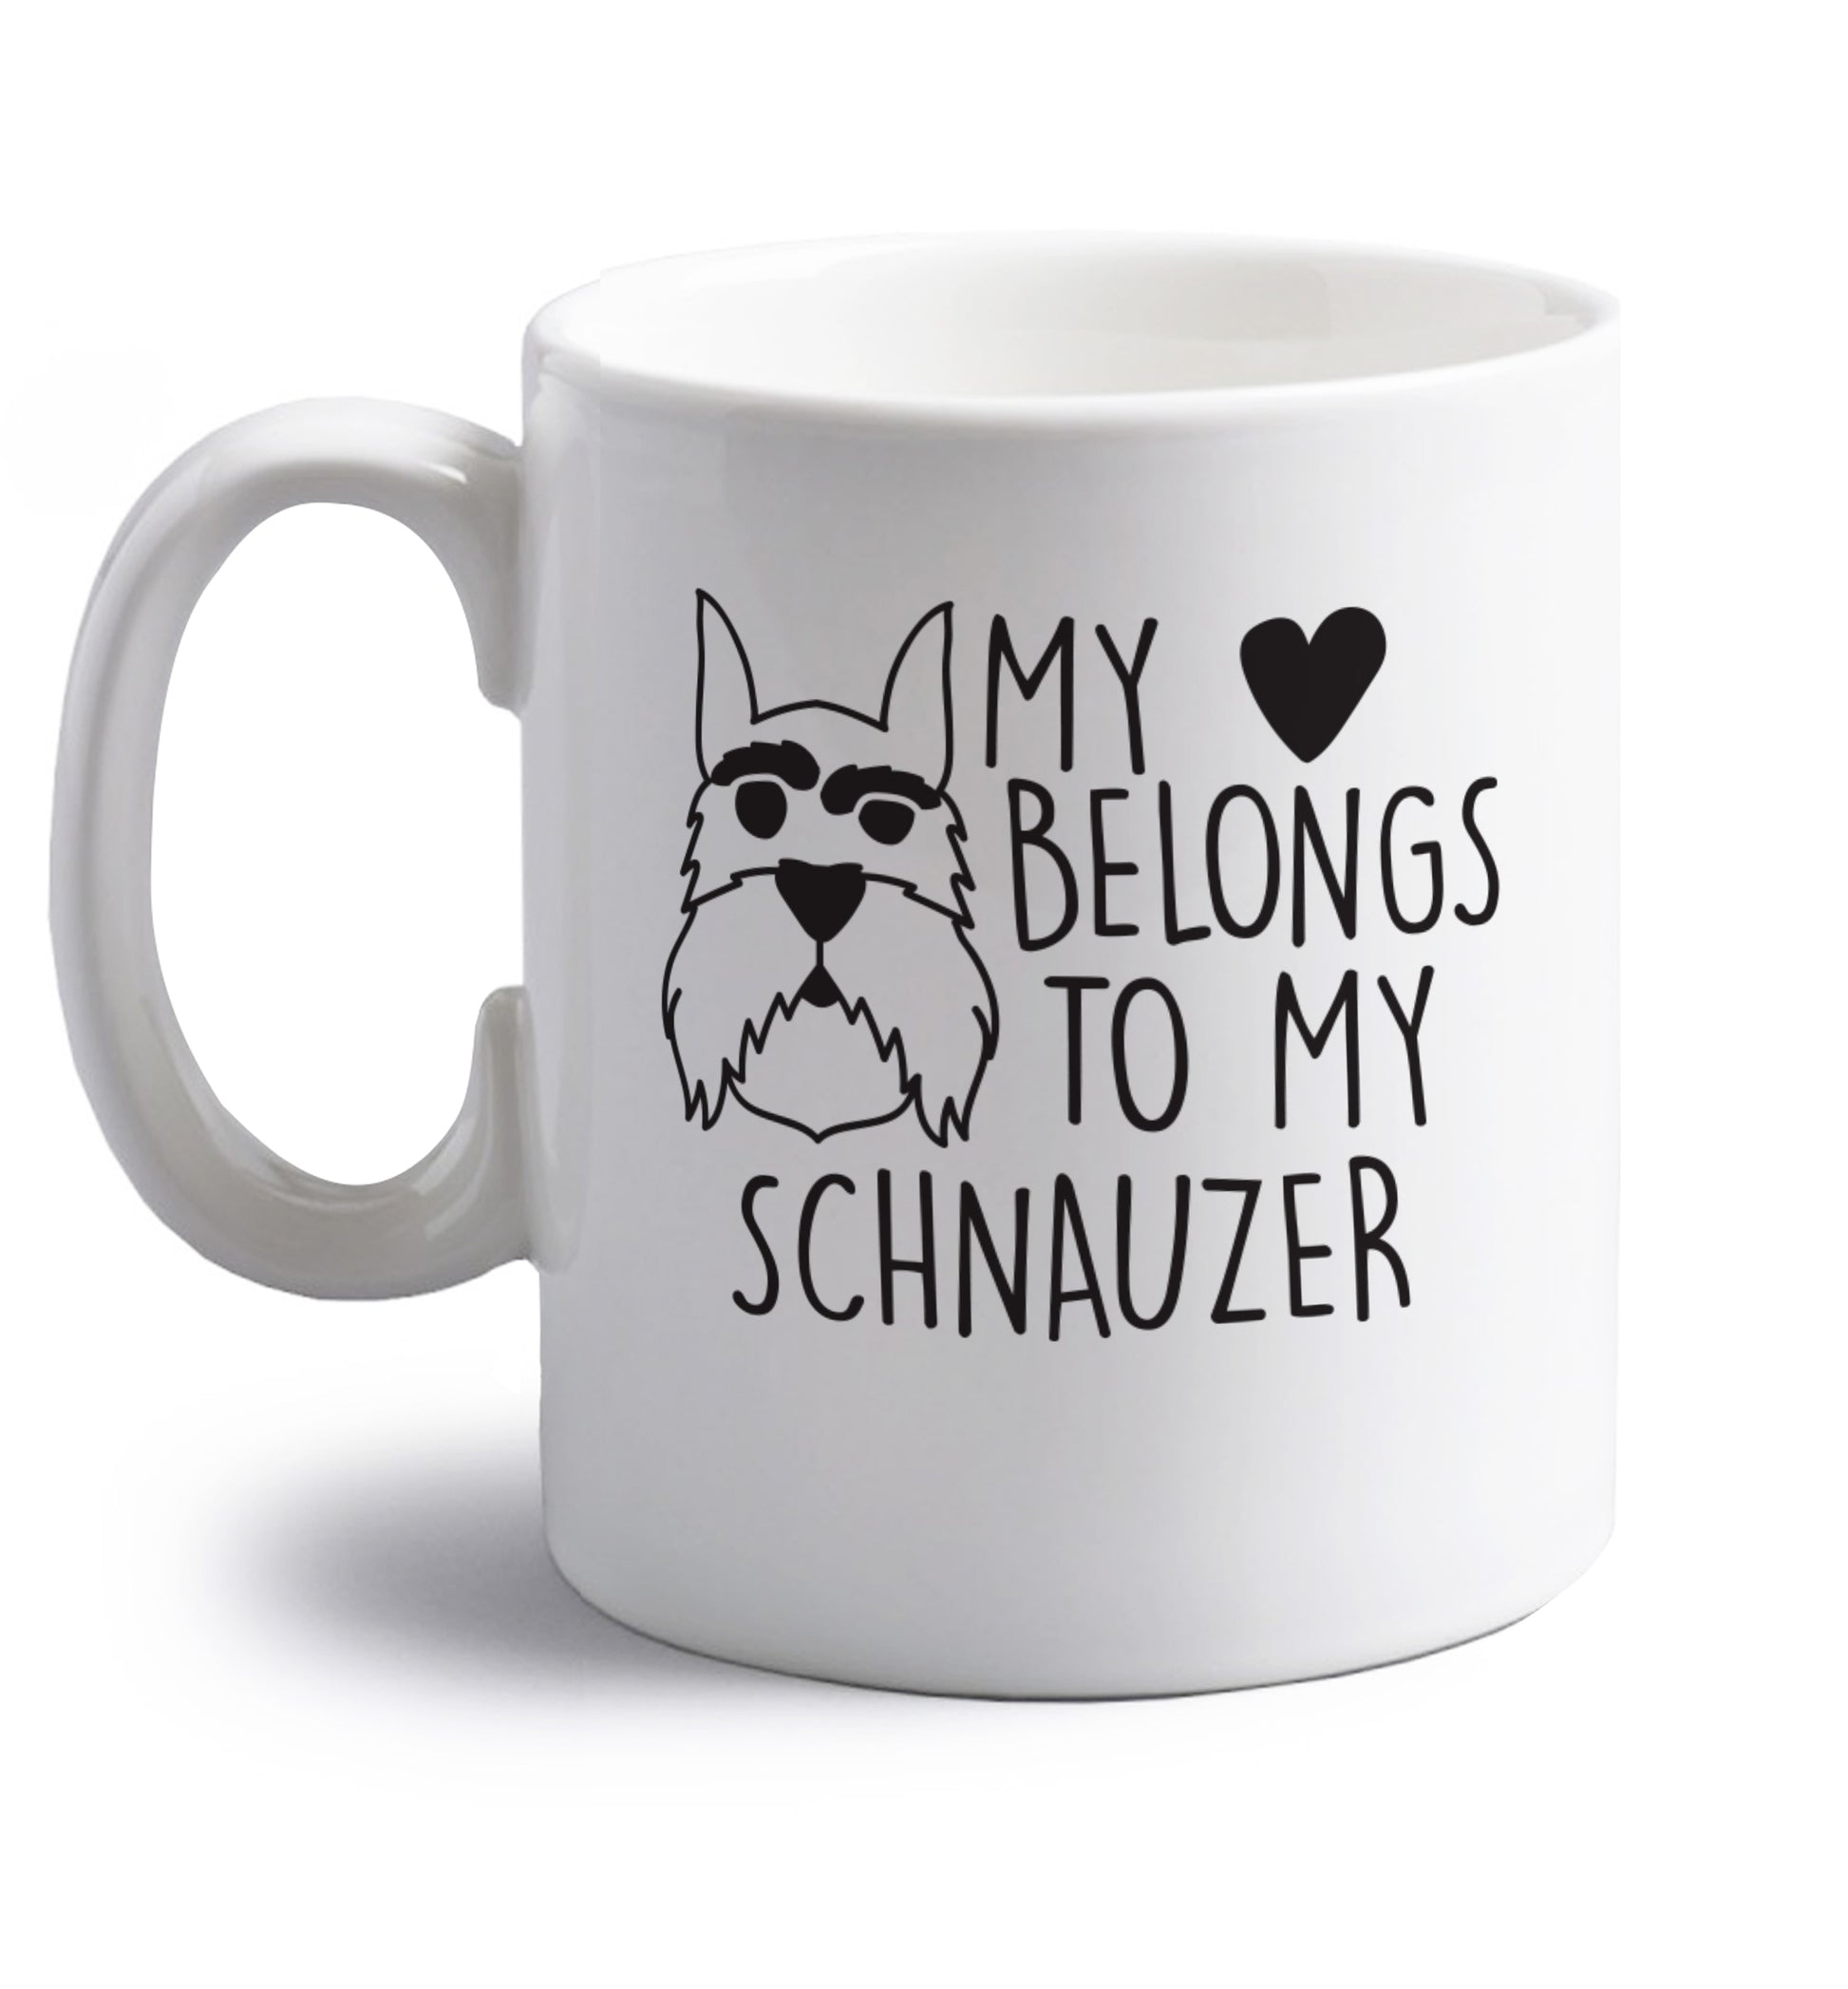 My heart belongs to my schnauzer right handed white ceramic mug 